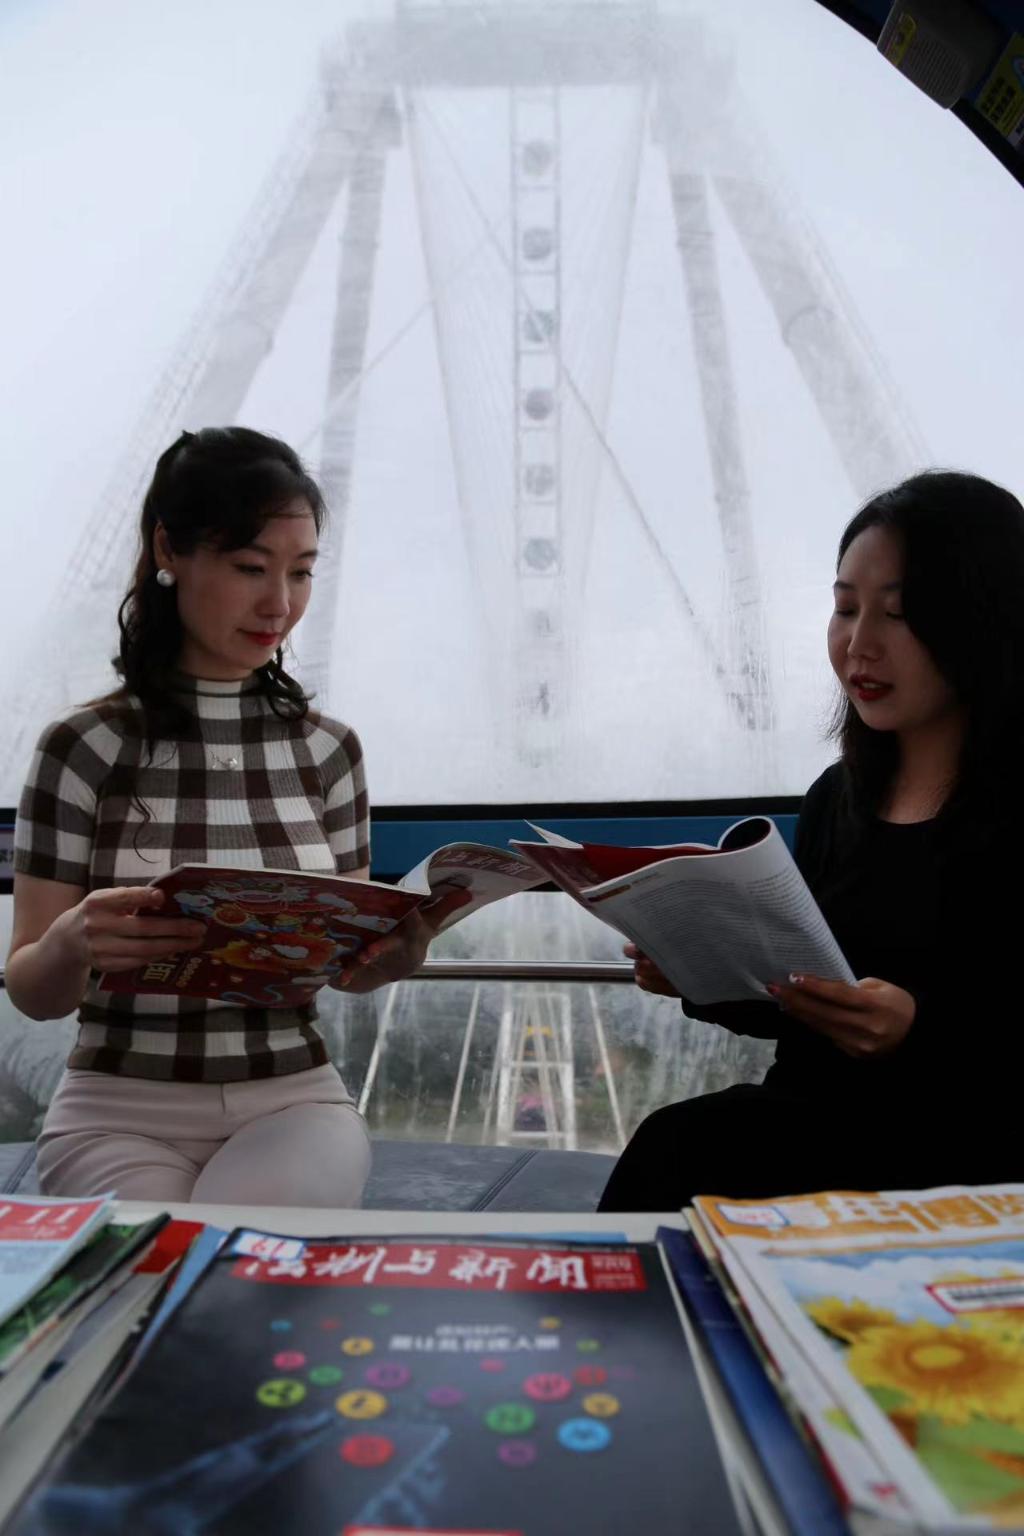 游客可以体验在摩天轮上阅读的乐趣。受访者供图